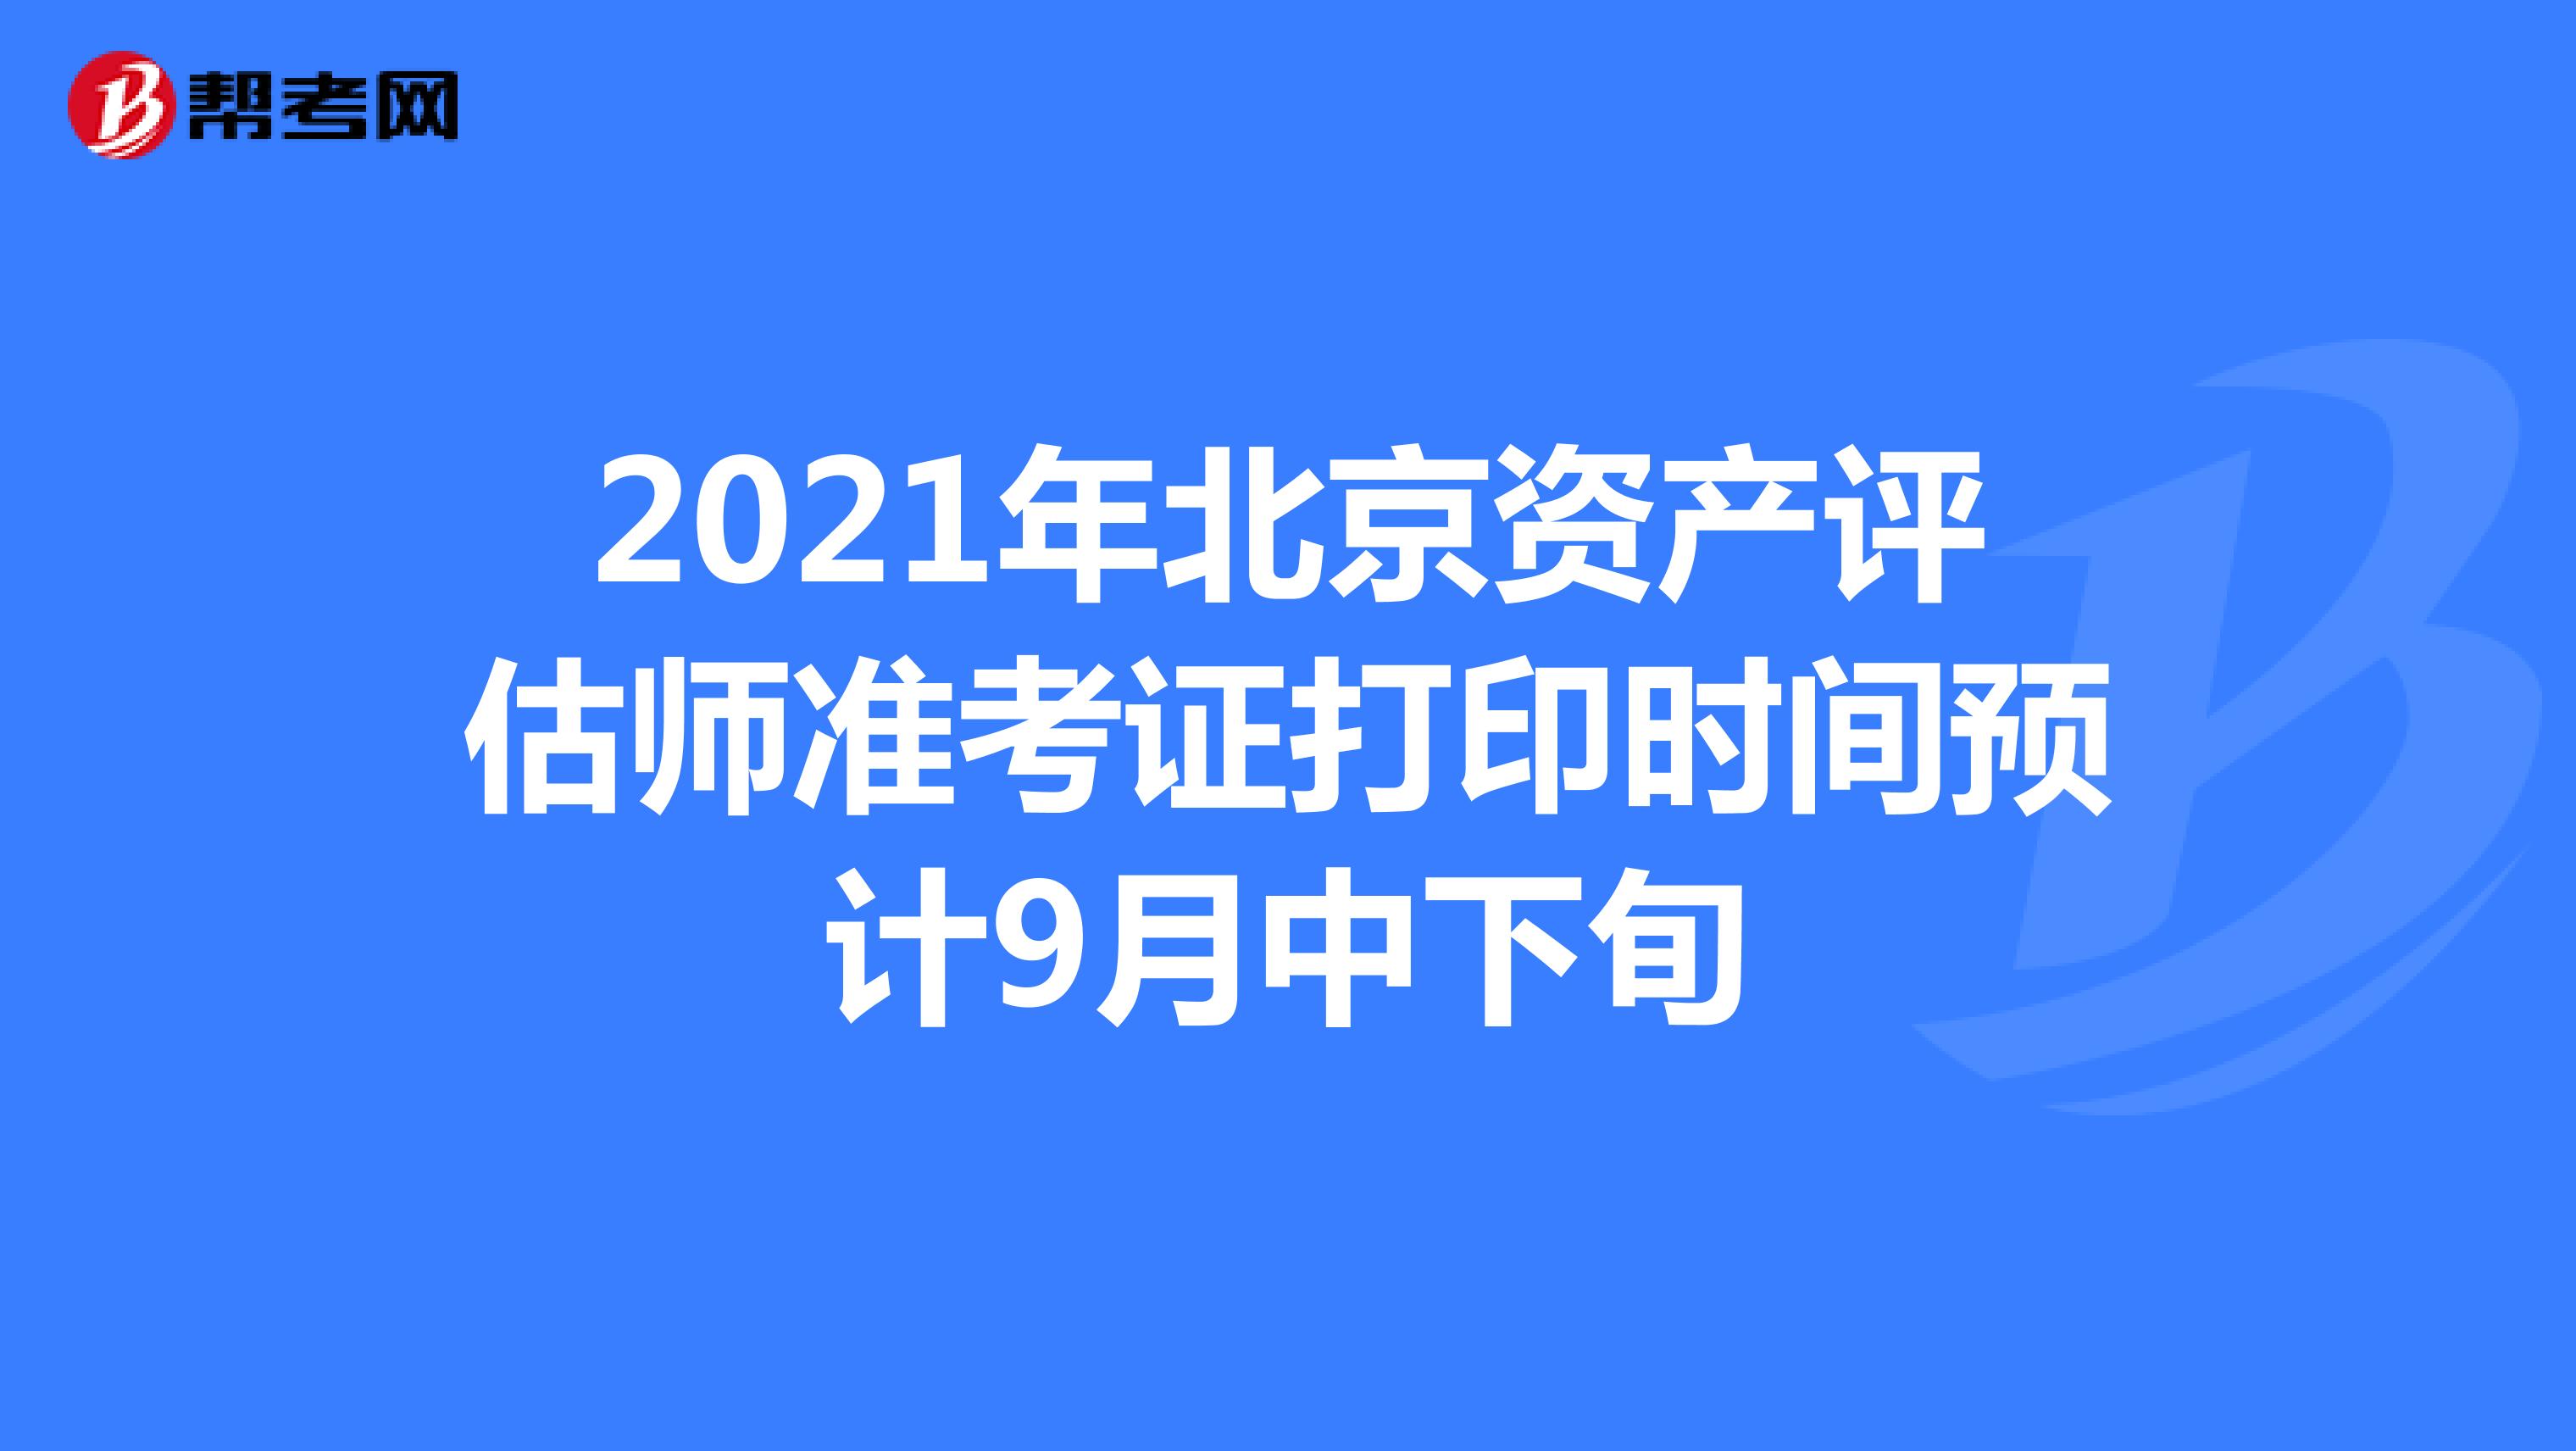 2021年北京资产评估师准考证打印时间预计9月中下旬